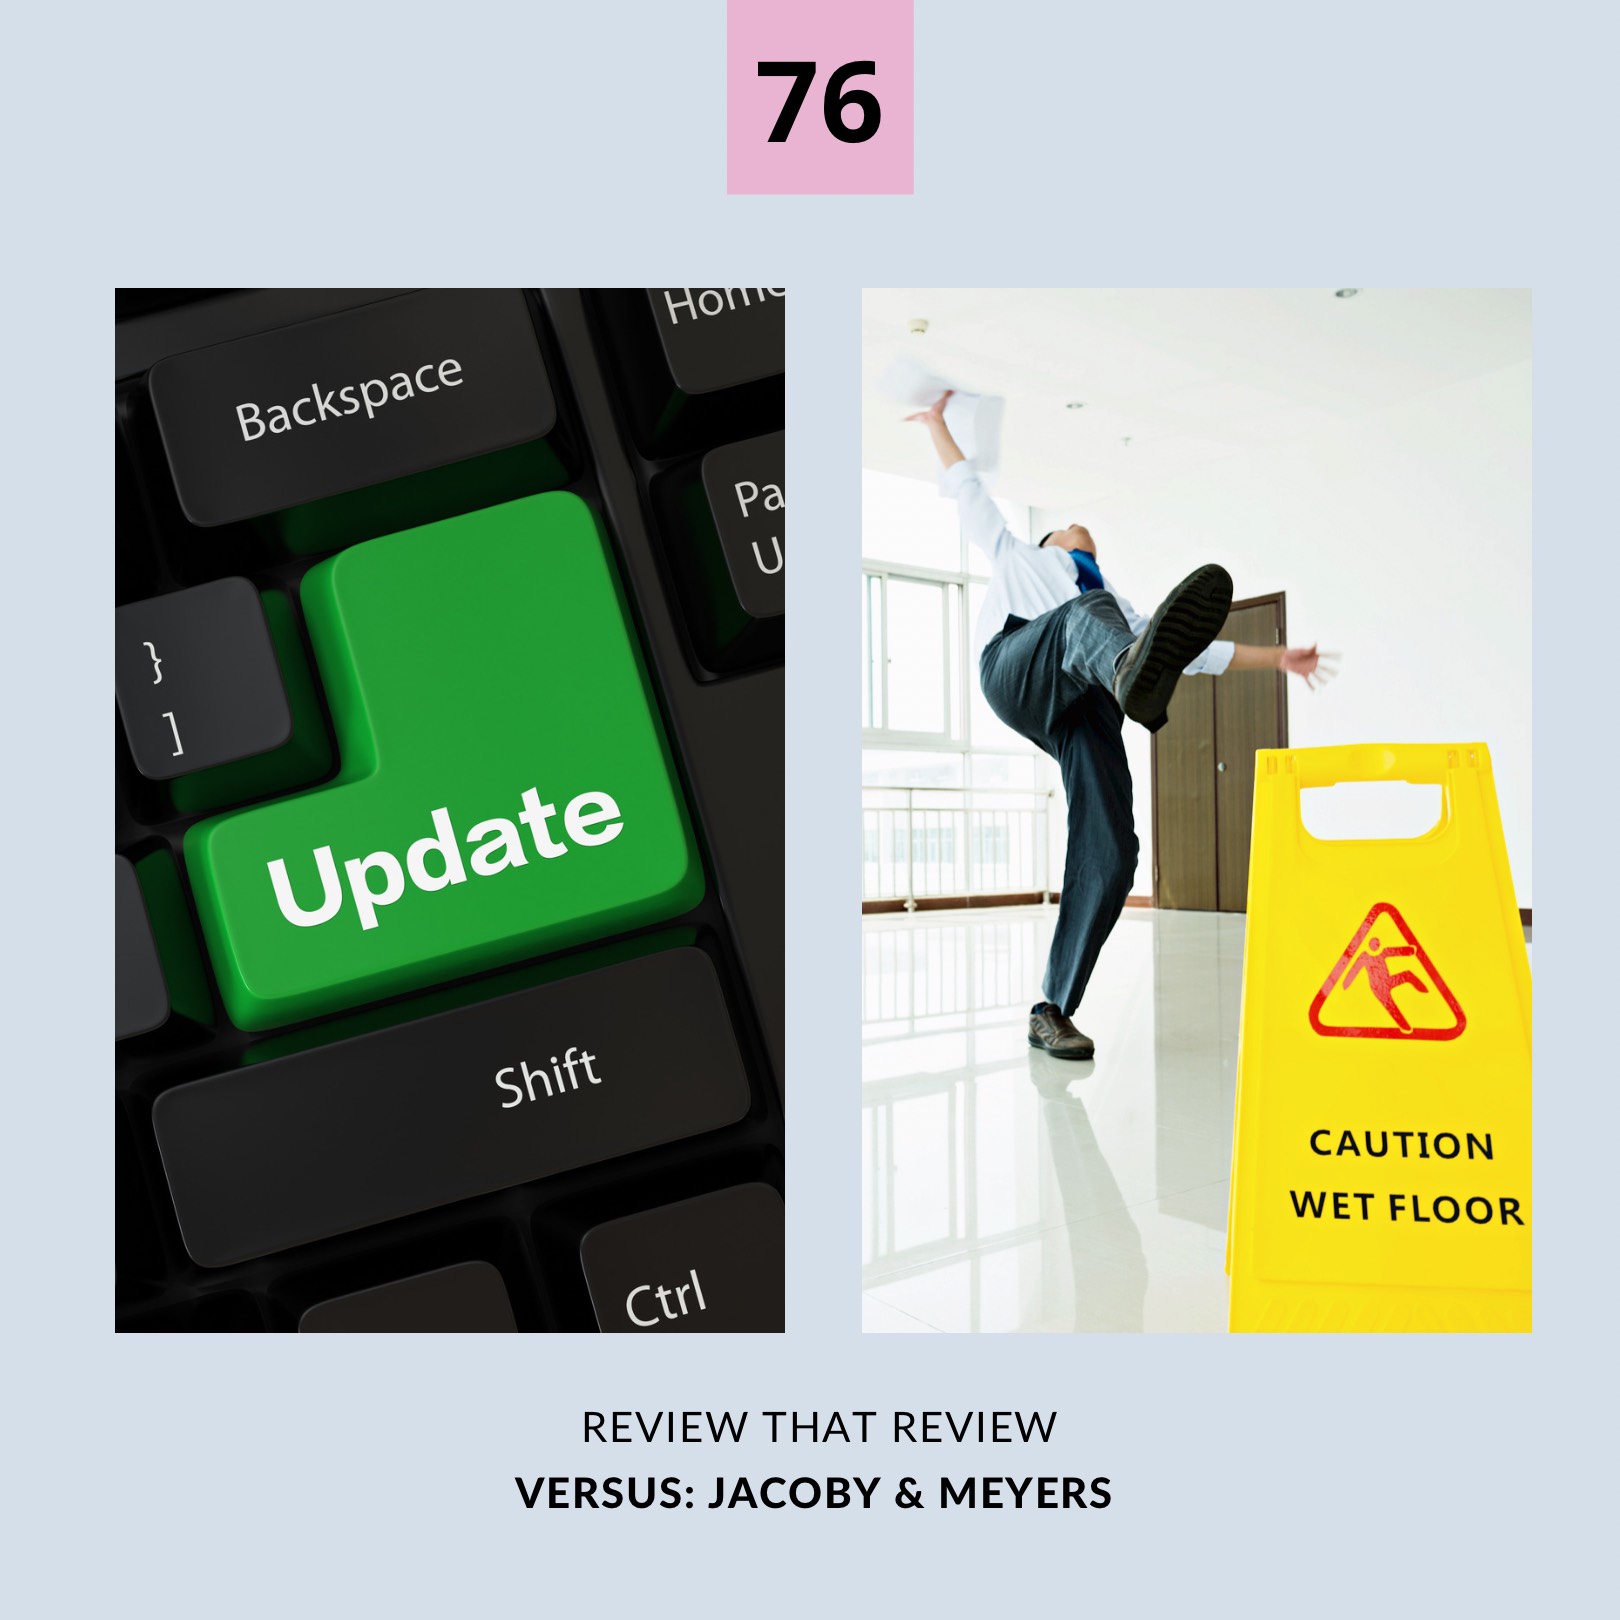 Episode 76: Jacoby & Meyers 1 vs. 5 Stars